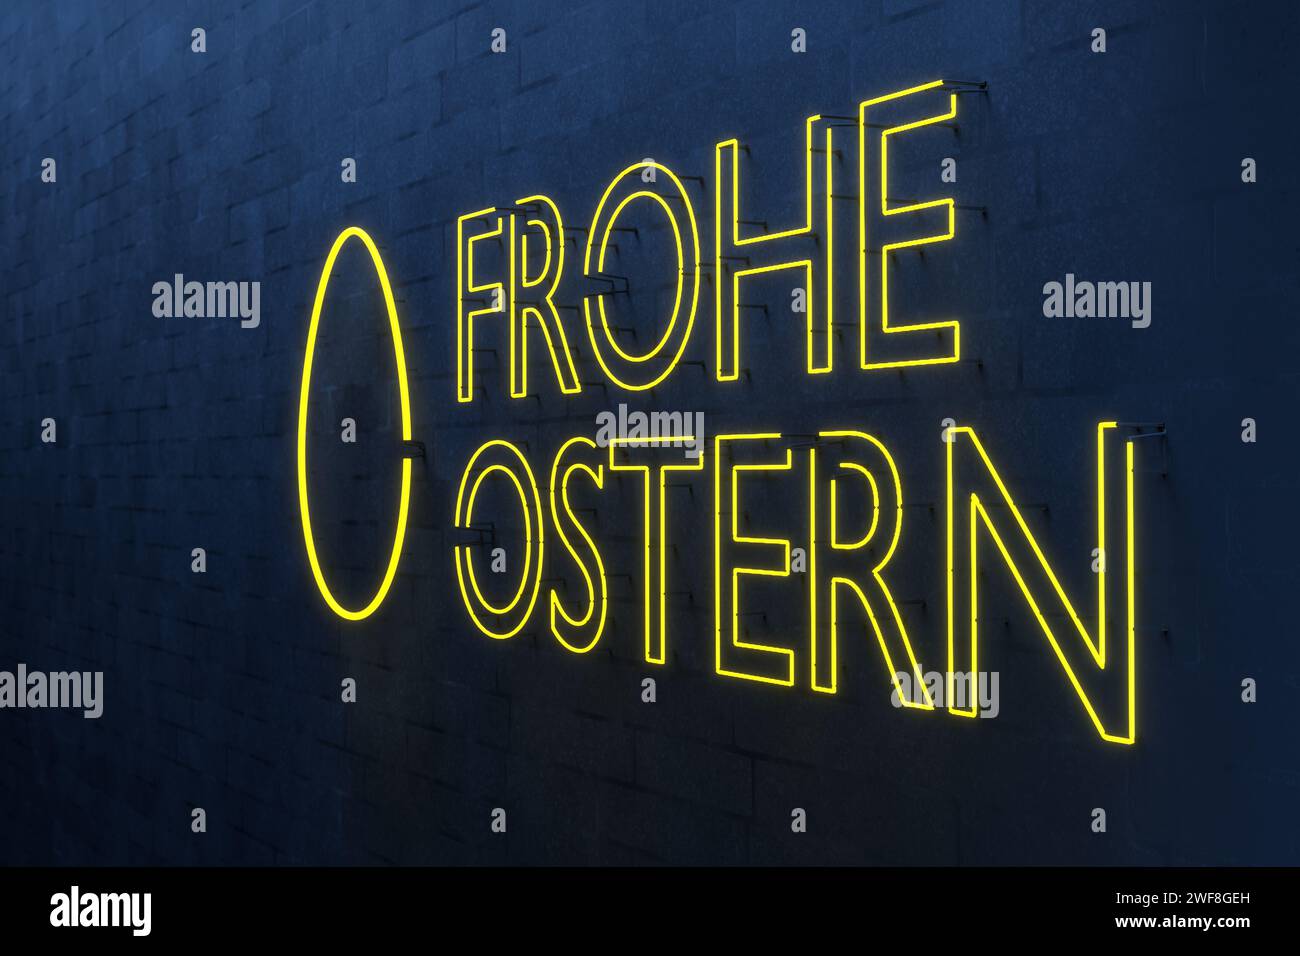 Texte allemand 'Frohe Ostern' (Joyeuses Pâques) enseigne au néon avec un œuf contre un mur de briques blanches éclairé en bleu Banque D'Images